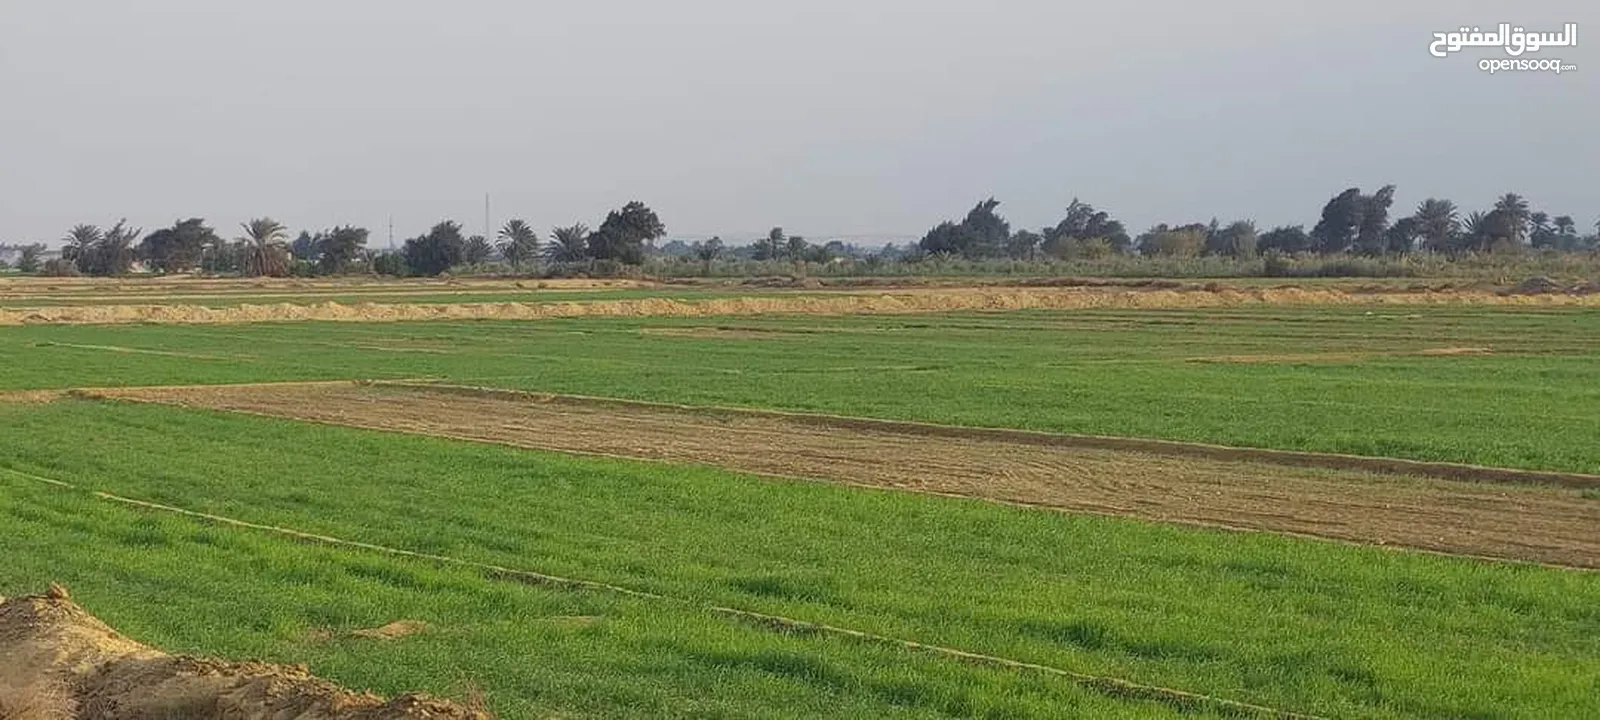 مزرعة 2 هكتار للبيع في وادي الربيع البازيد بالقرب من المسجد الاخضر بسعر كزيوني